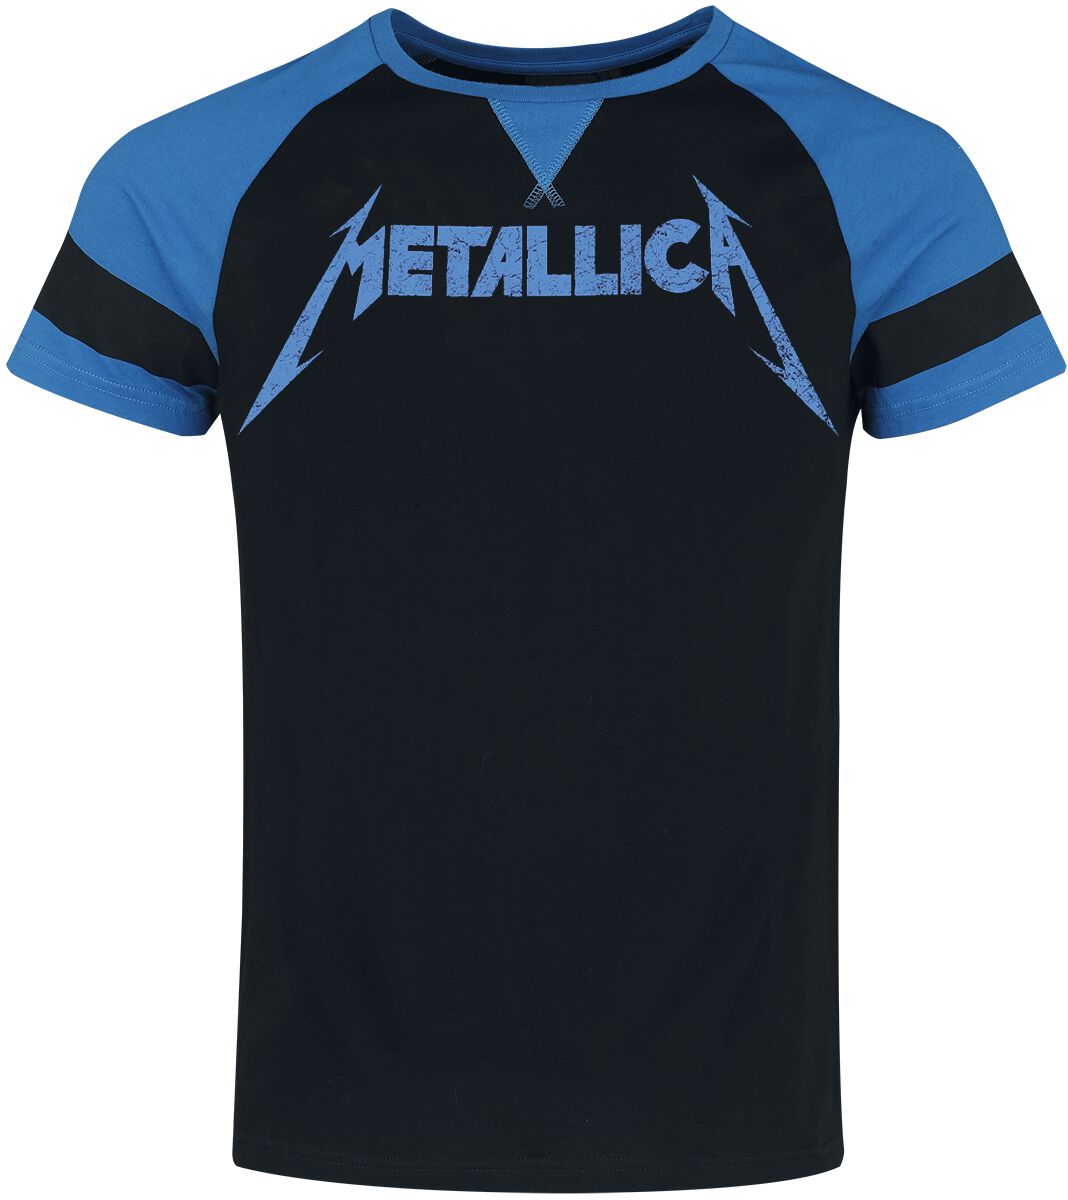 Metallica EMP Signature Collection T-Shirt schwarz blau in M